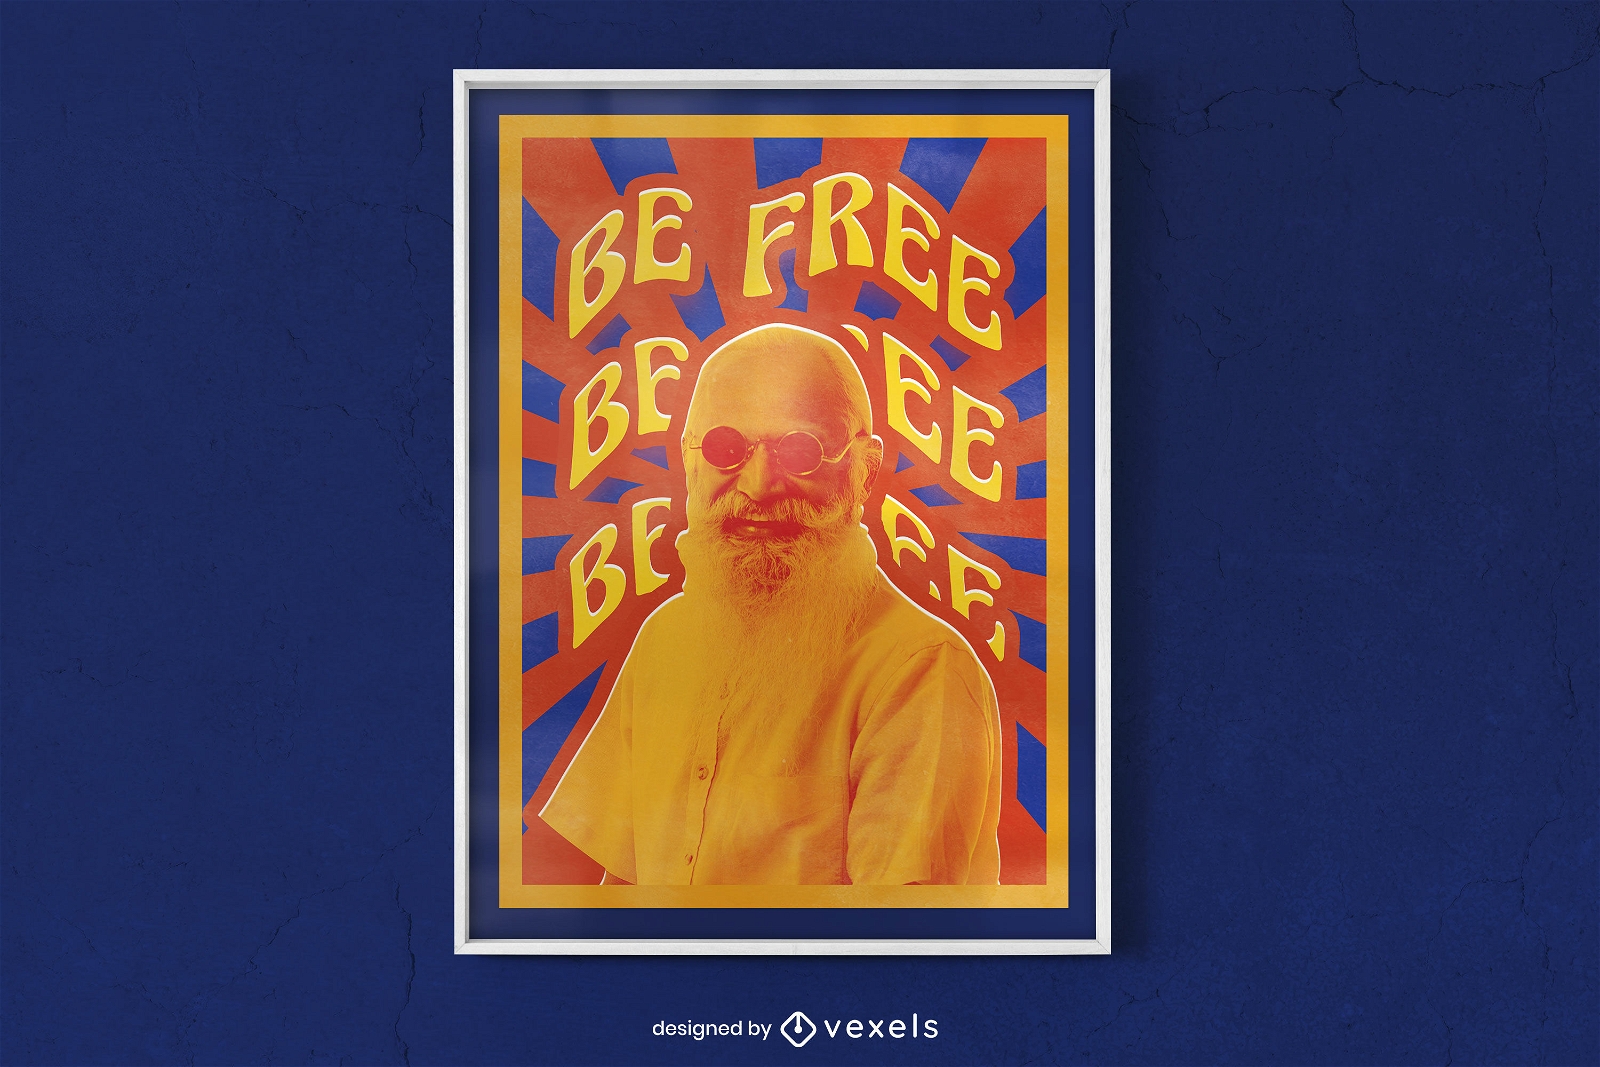 Hippie old man poster design